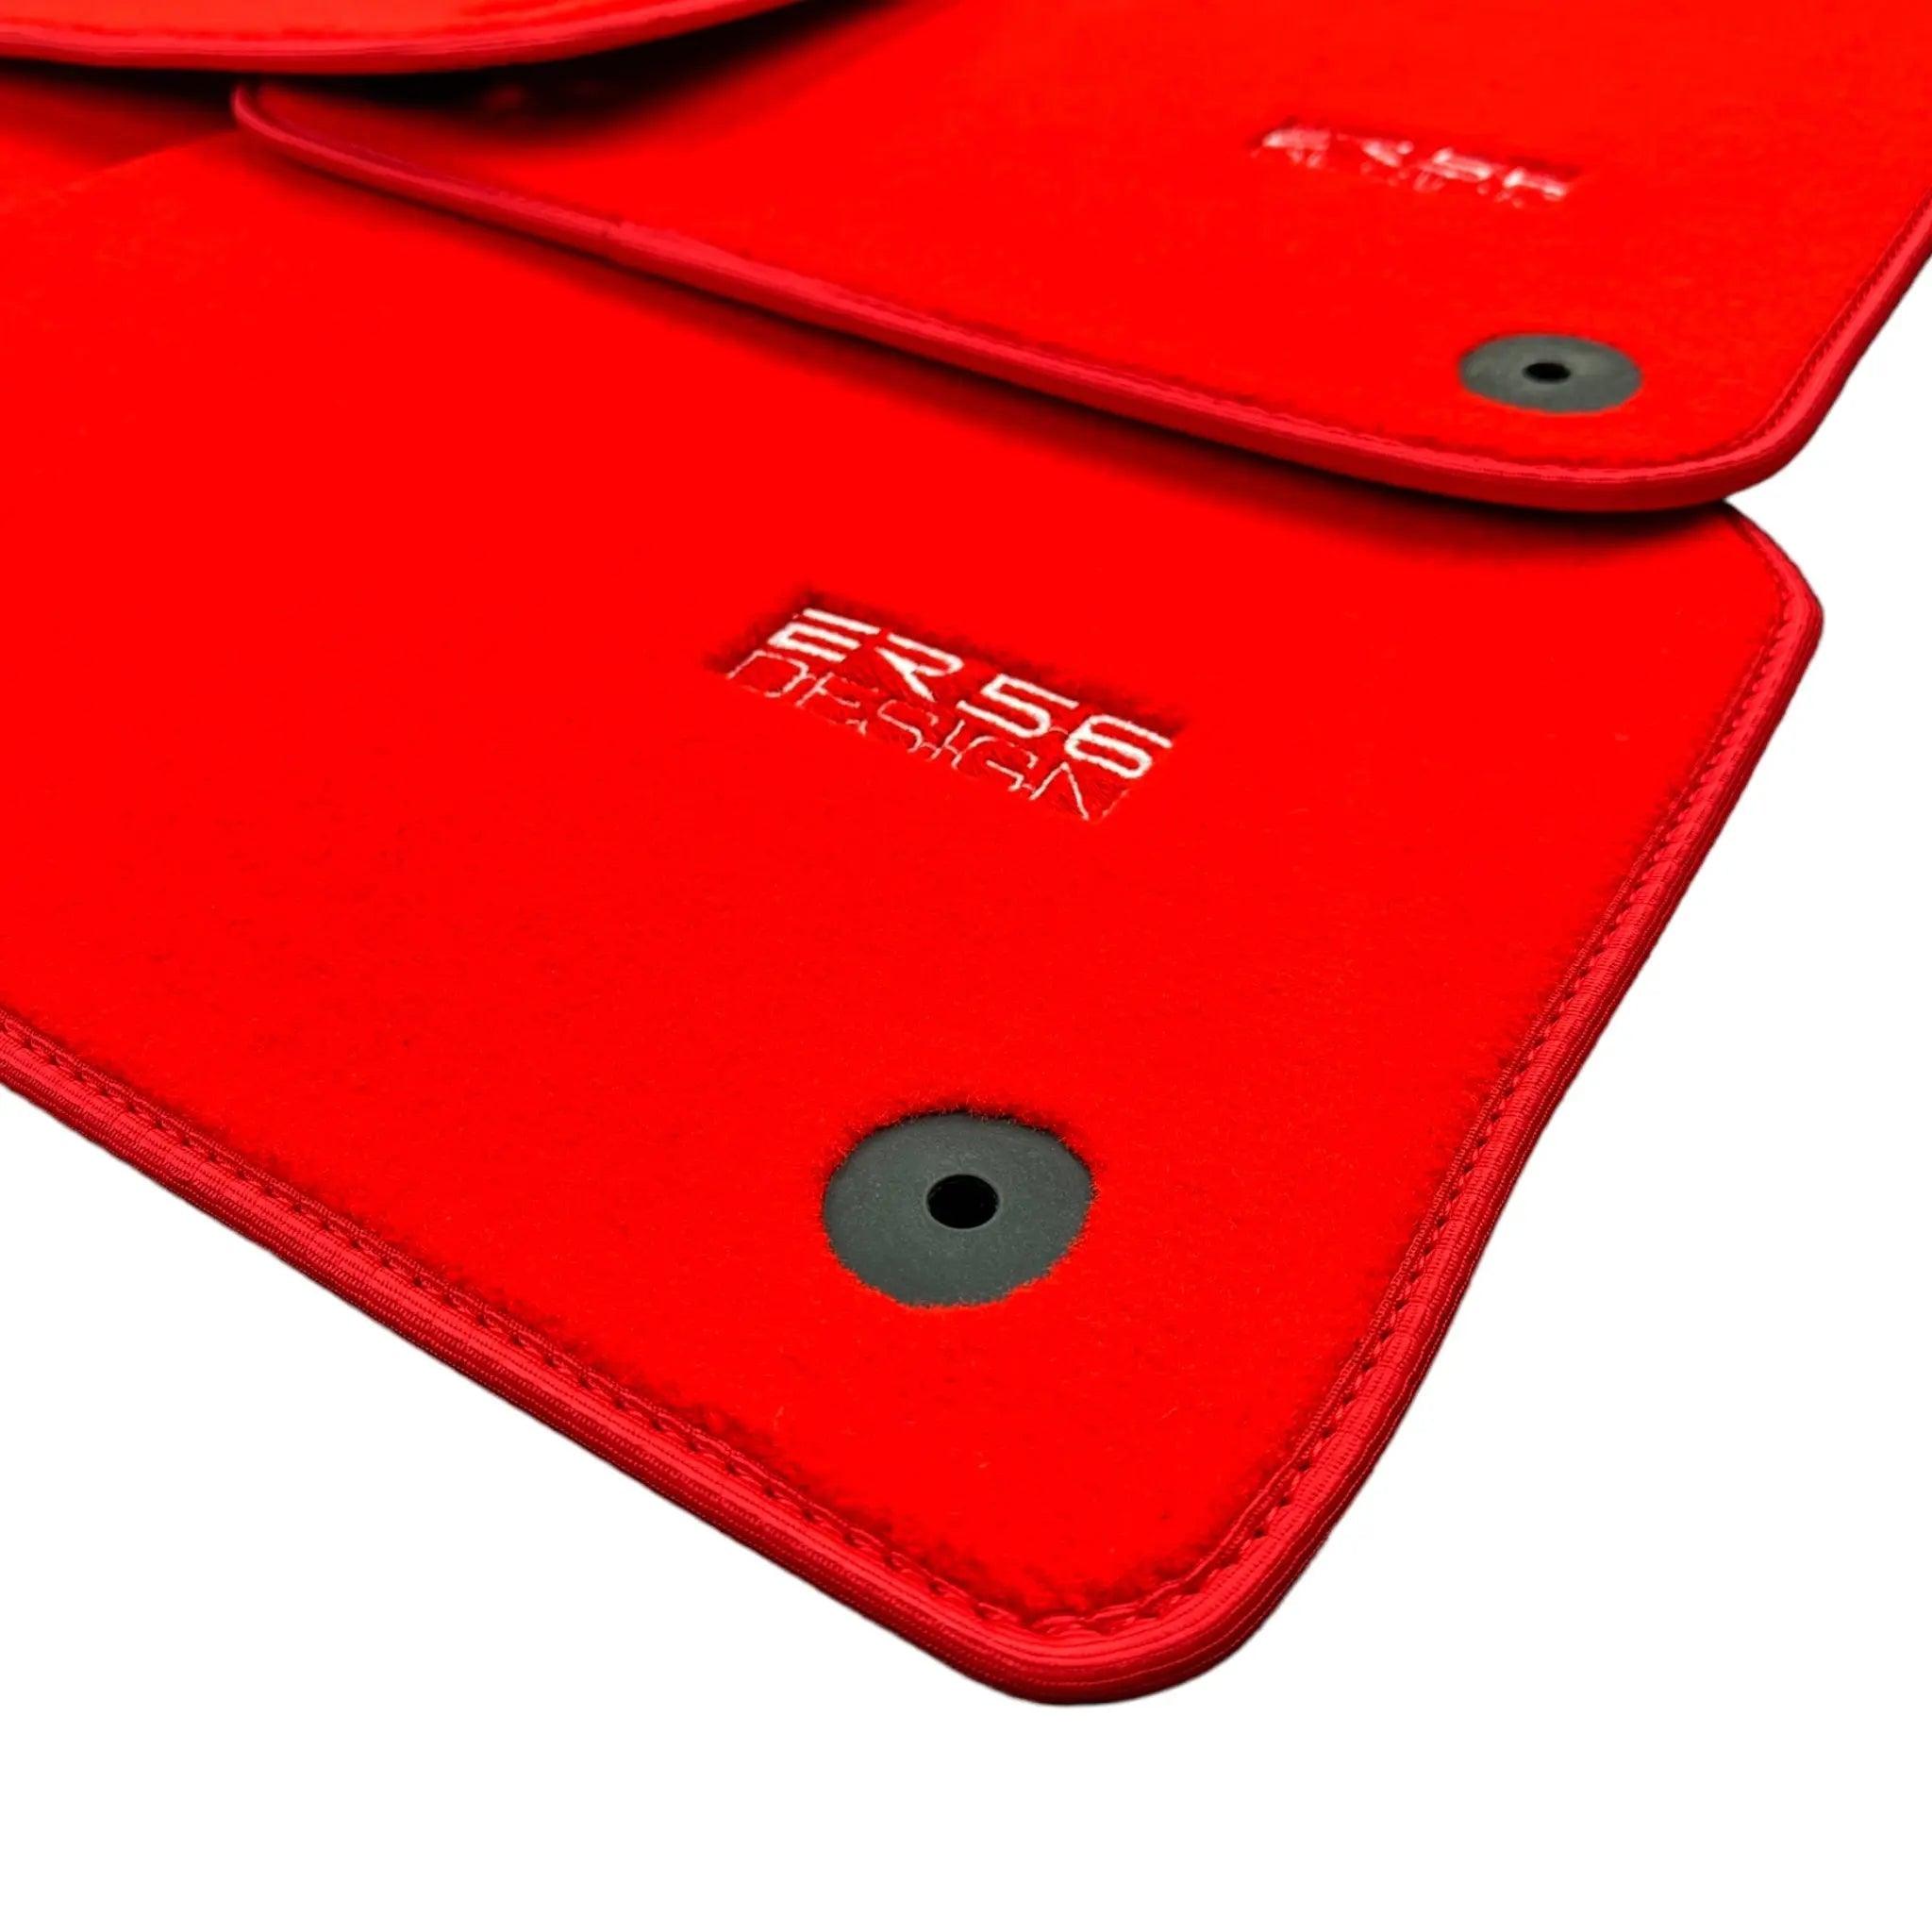 Red Floor Mats for Audi A6 - C6 Avant Long (2004-2008) | ER56 Design